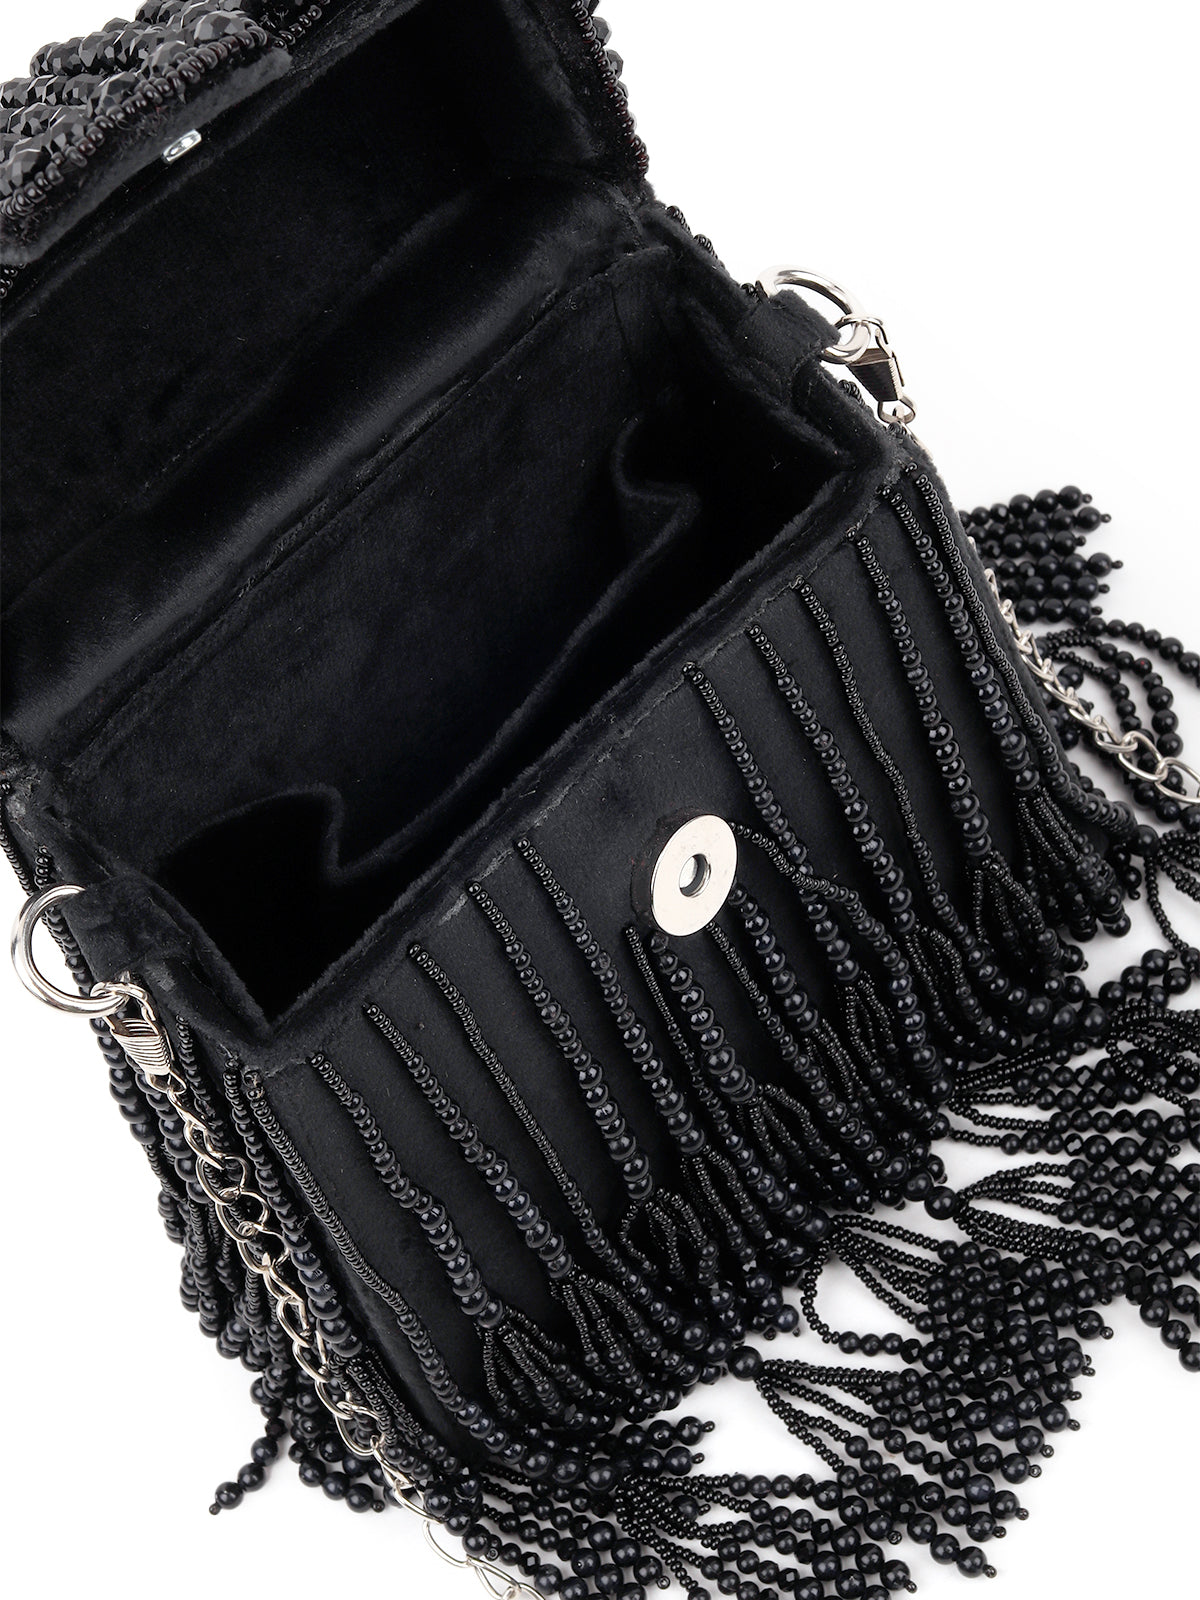 Rebecca Minkoff black tassel purse | Black tassels, Tassel purse, Purses